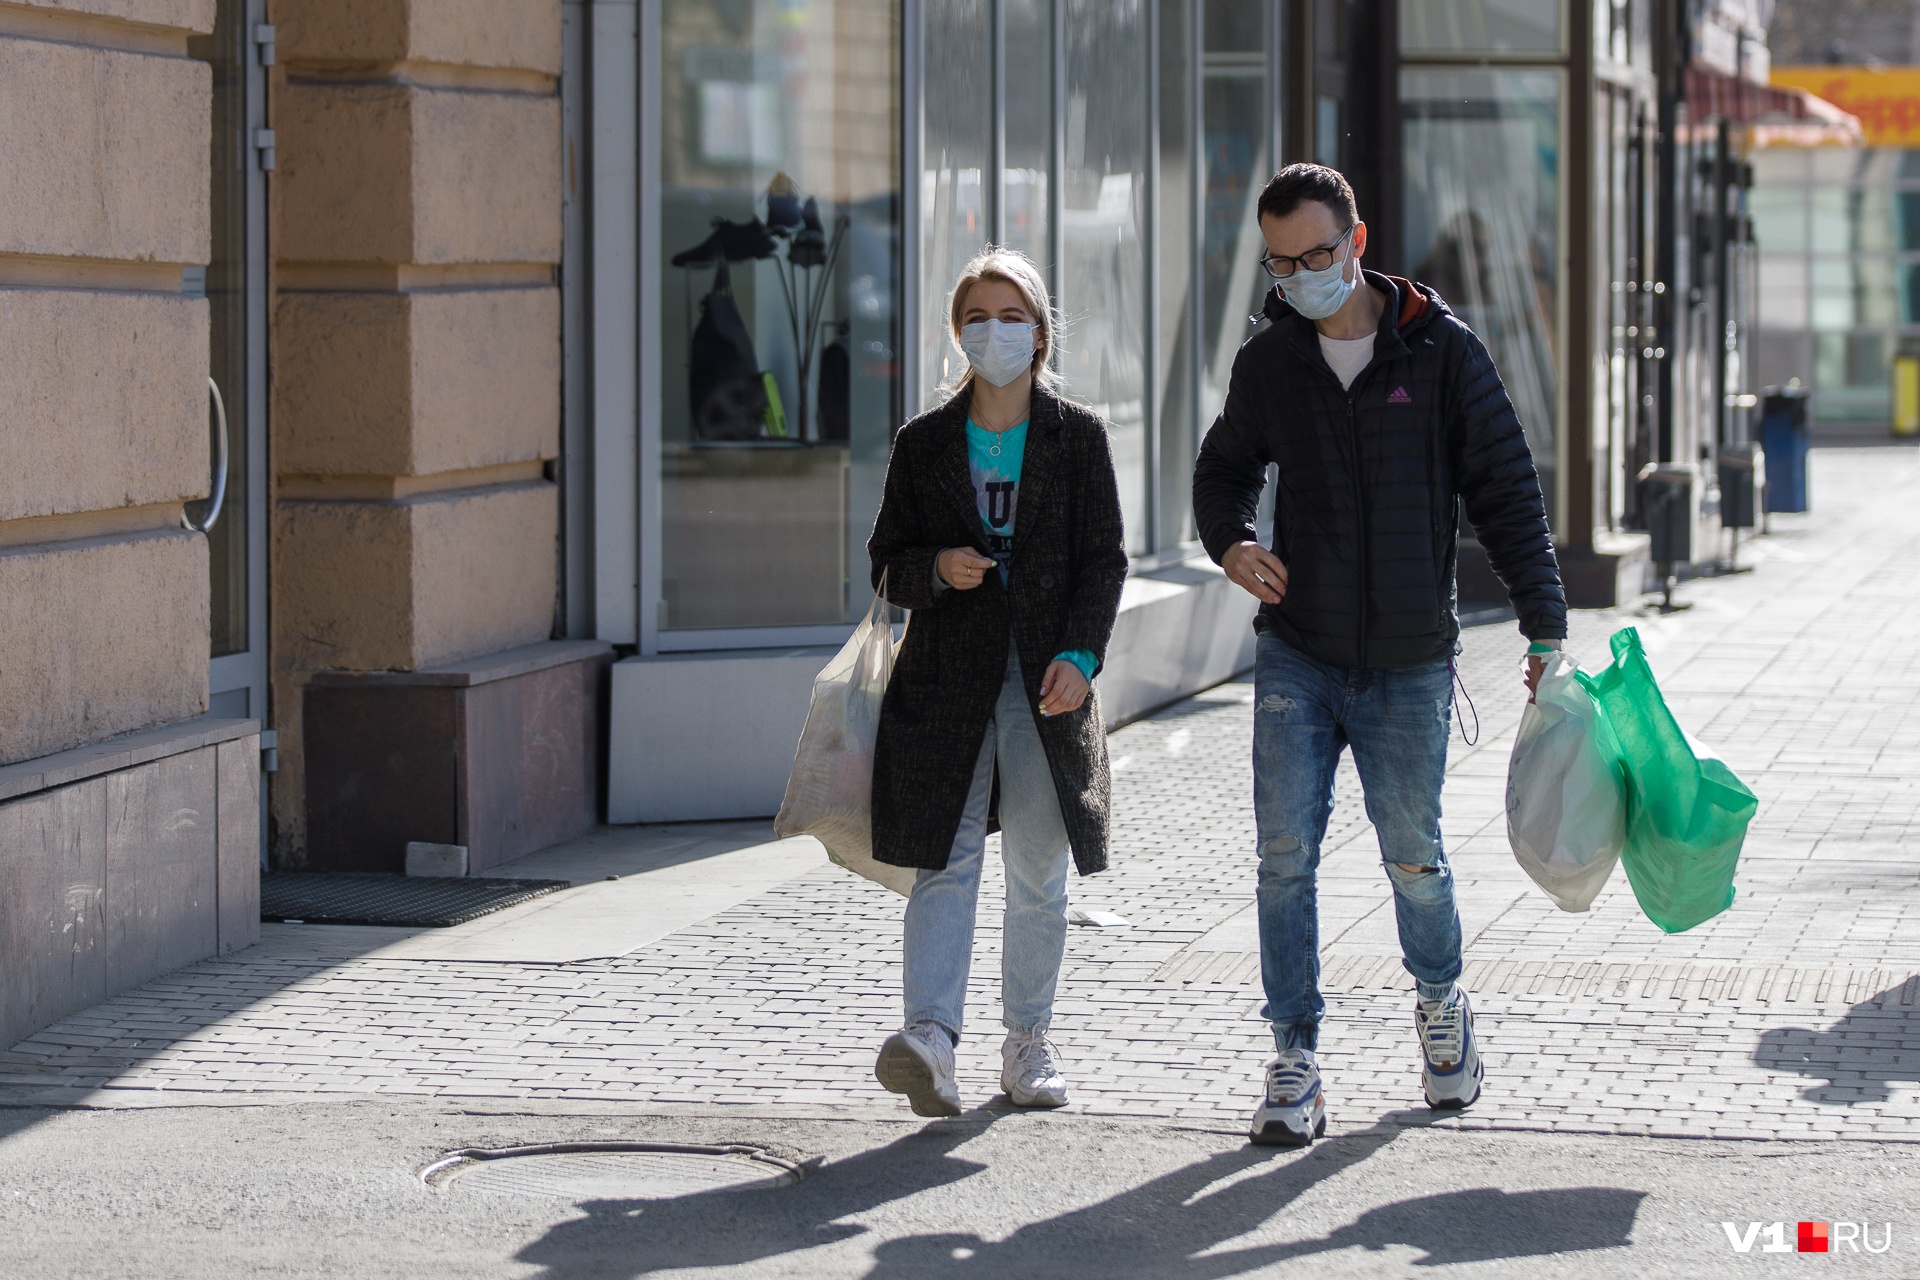 Не забудьте надеть маску — иначе возможен штраф. 58-й день коронавируса в Красноярском крае